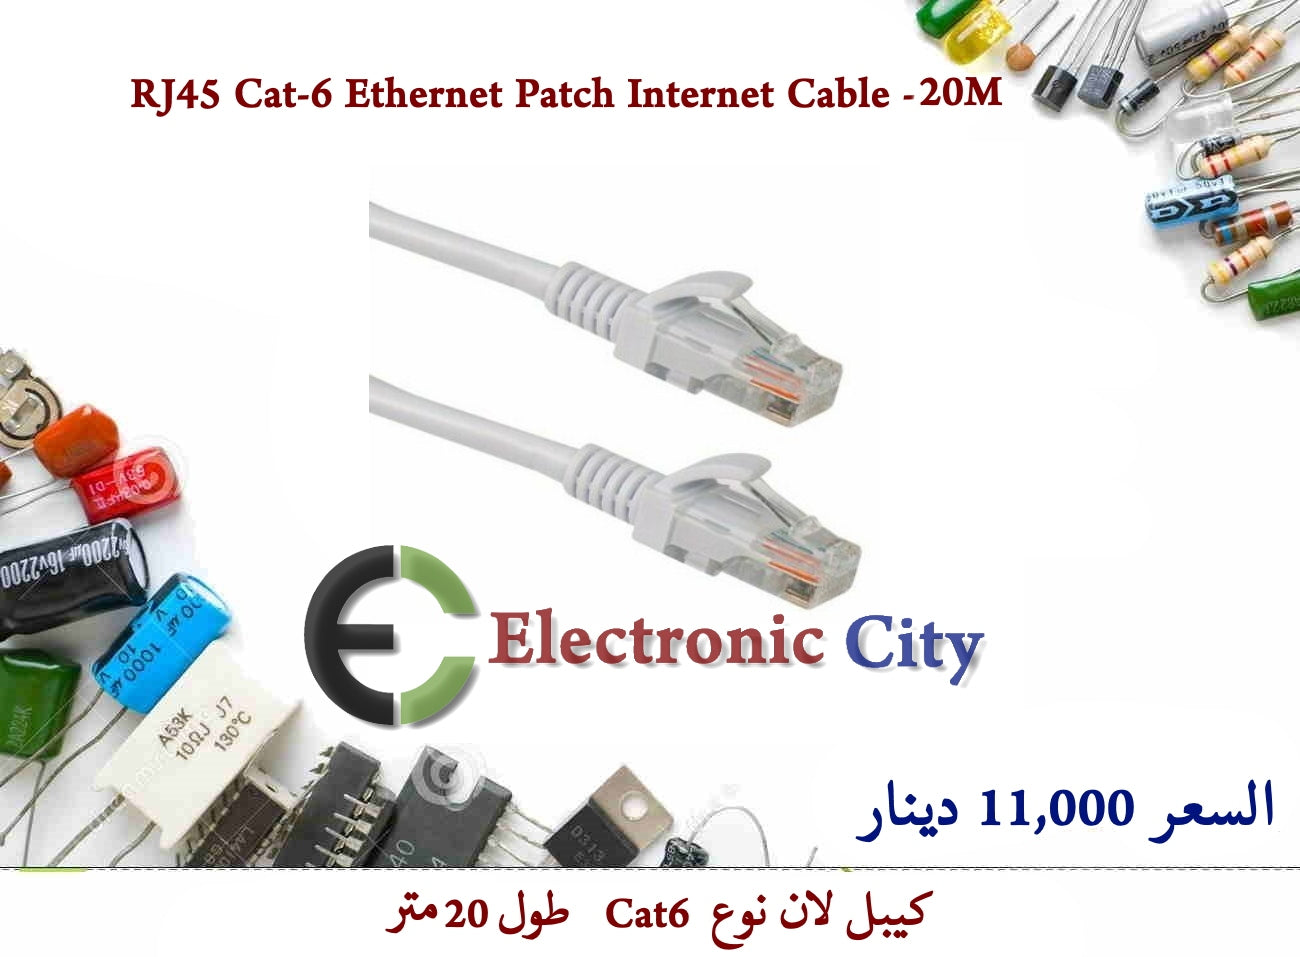 RJ45 Cat-6 Ethernet Patch Internet Cable -20M